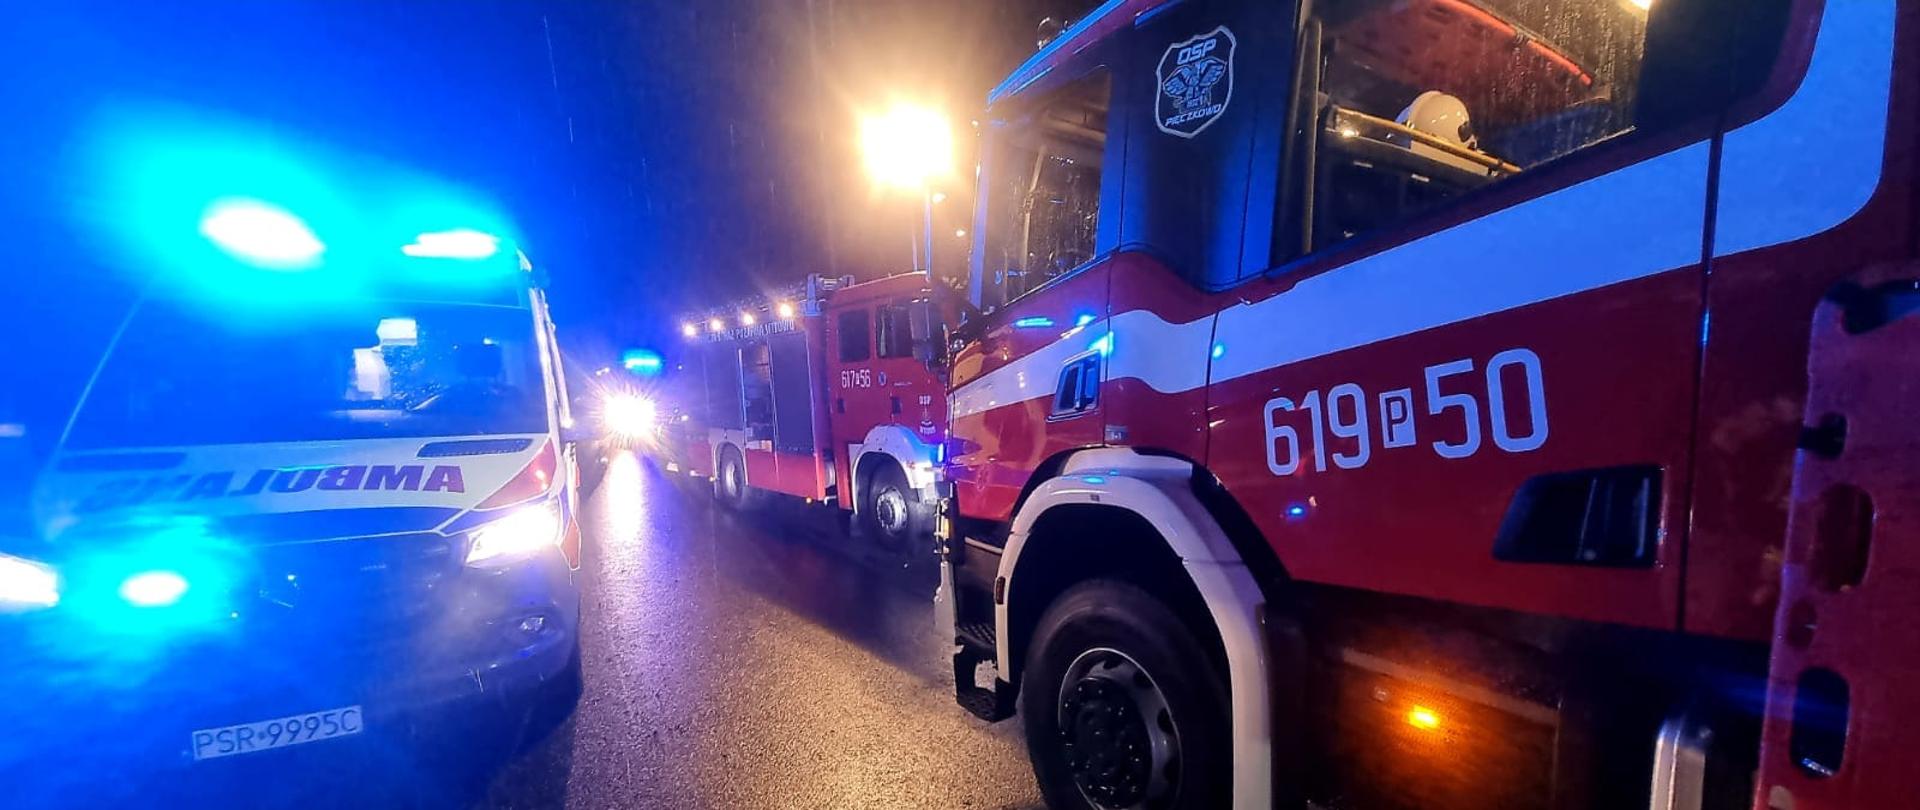 Samochody pożarnicze i zespół ratownictwa medycznego w czasie nocnej akcji poszukiwawczej. Samochody stoją na ulicy.